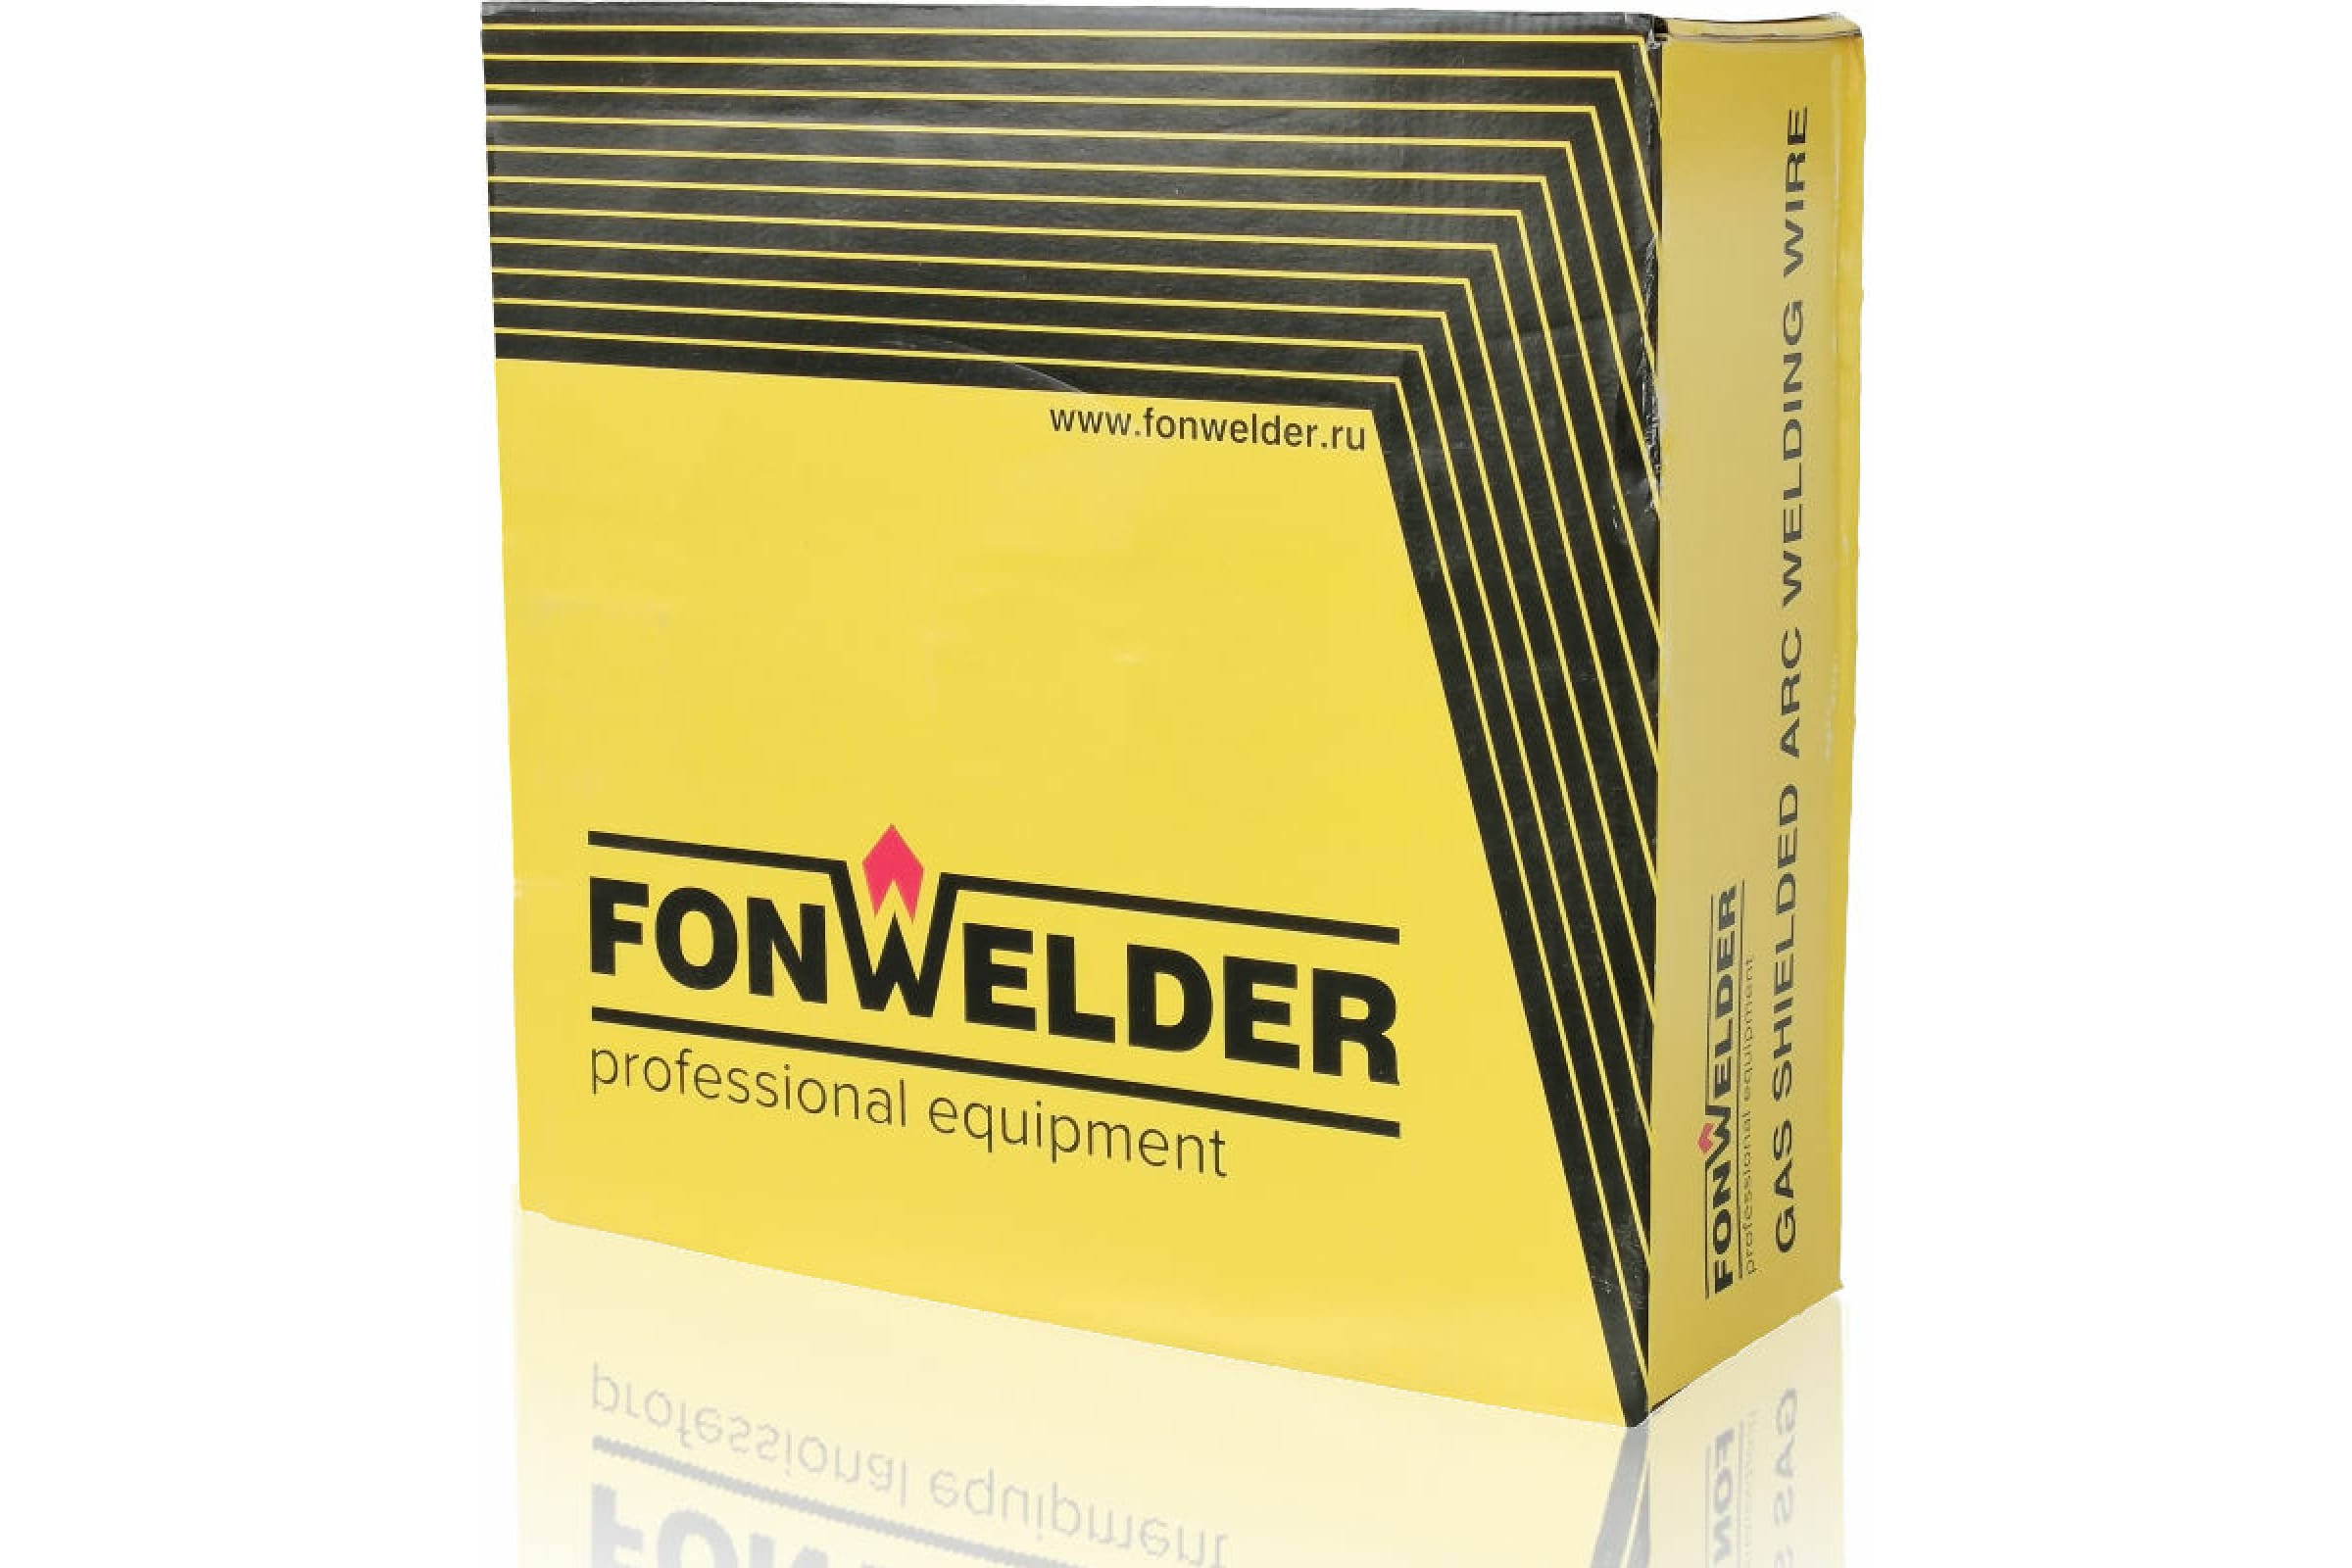 Fonwelder Проволока сварочная ER 70S-6 d=0,8 мм, D270, 15кг, паллета 1080 кг., 2700815